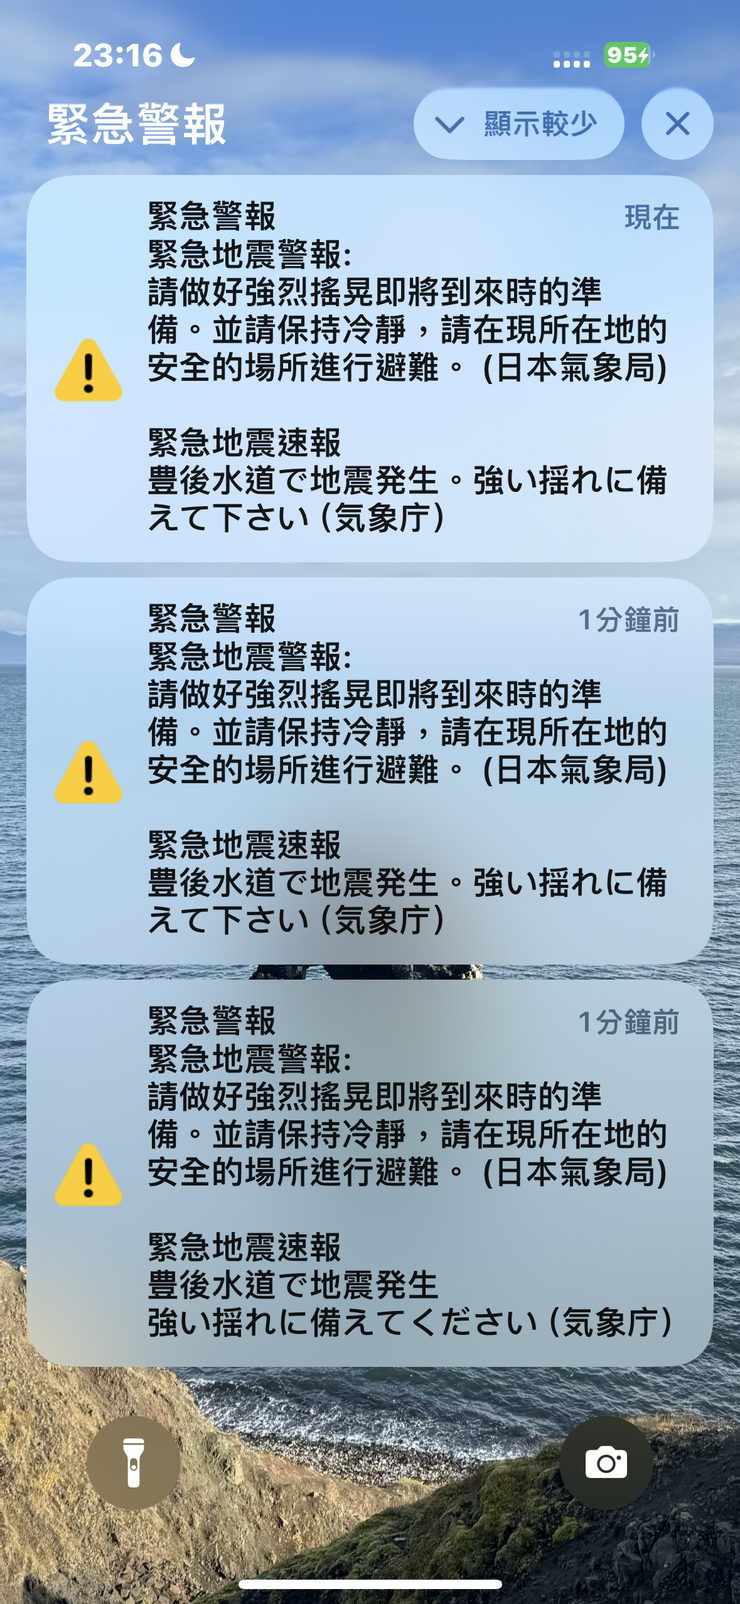 手機收到的地震警報